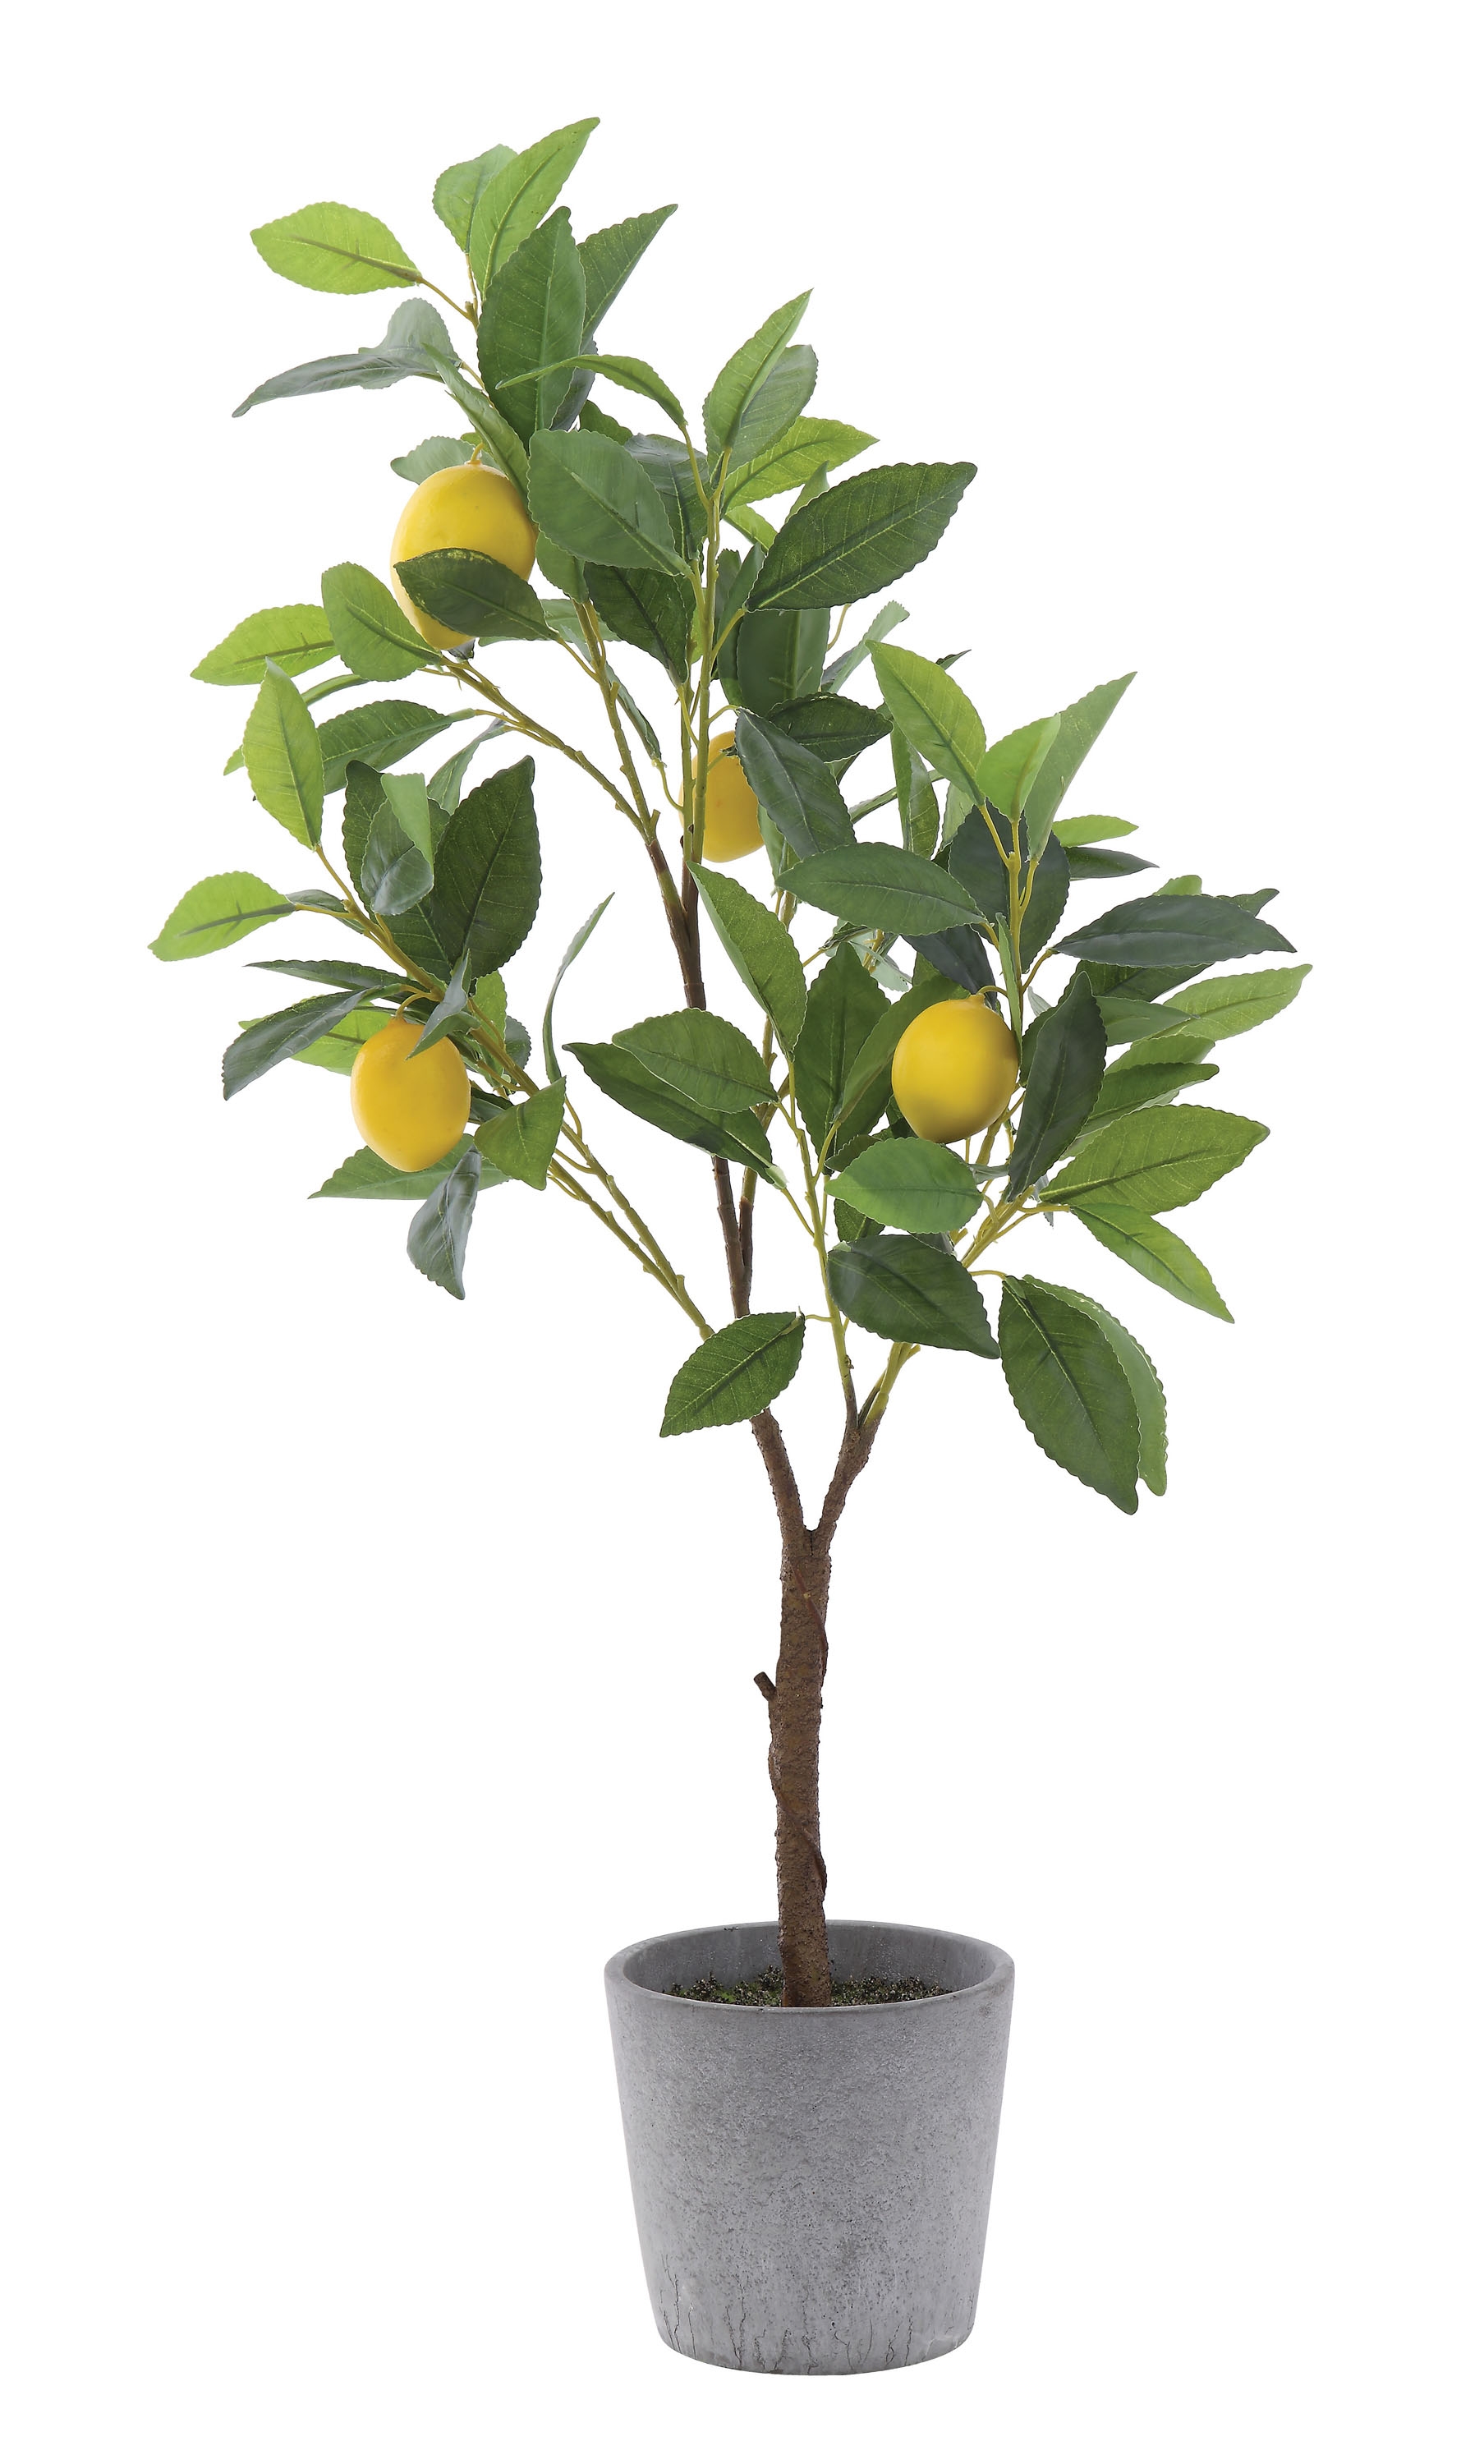 Faux Lemon Tree in Cement Pot - Image 0